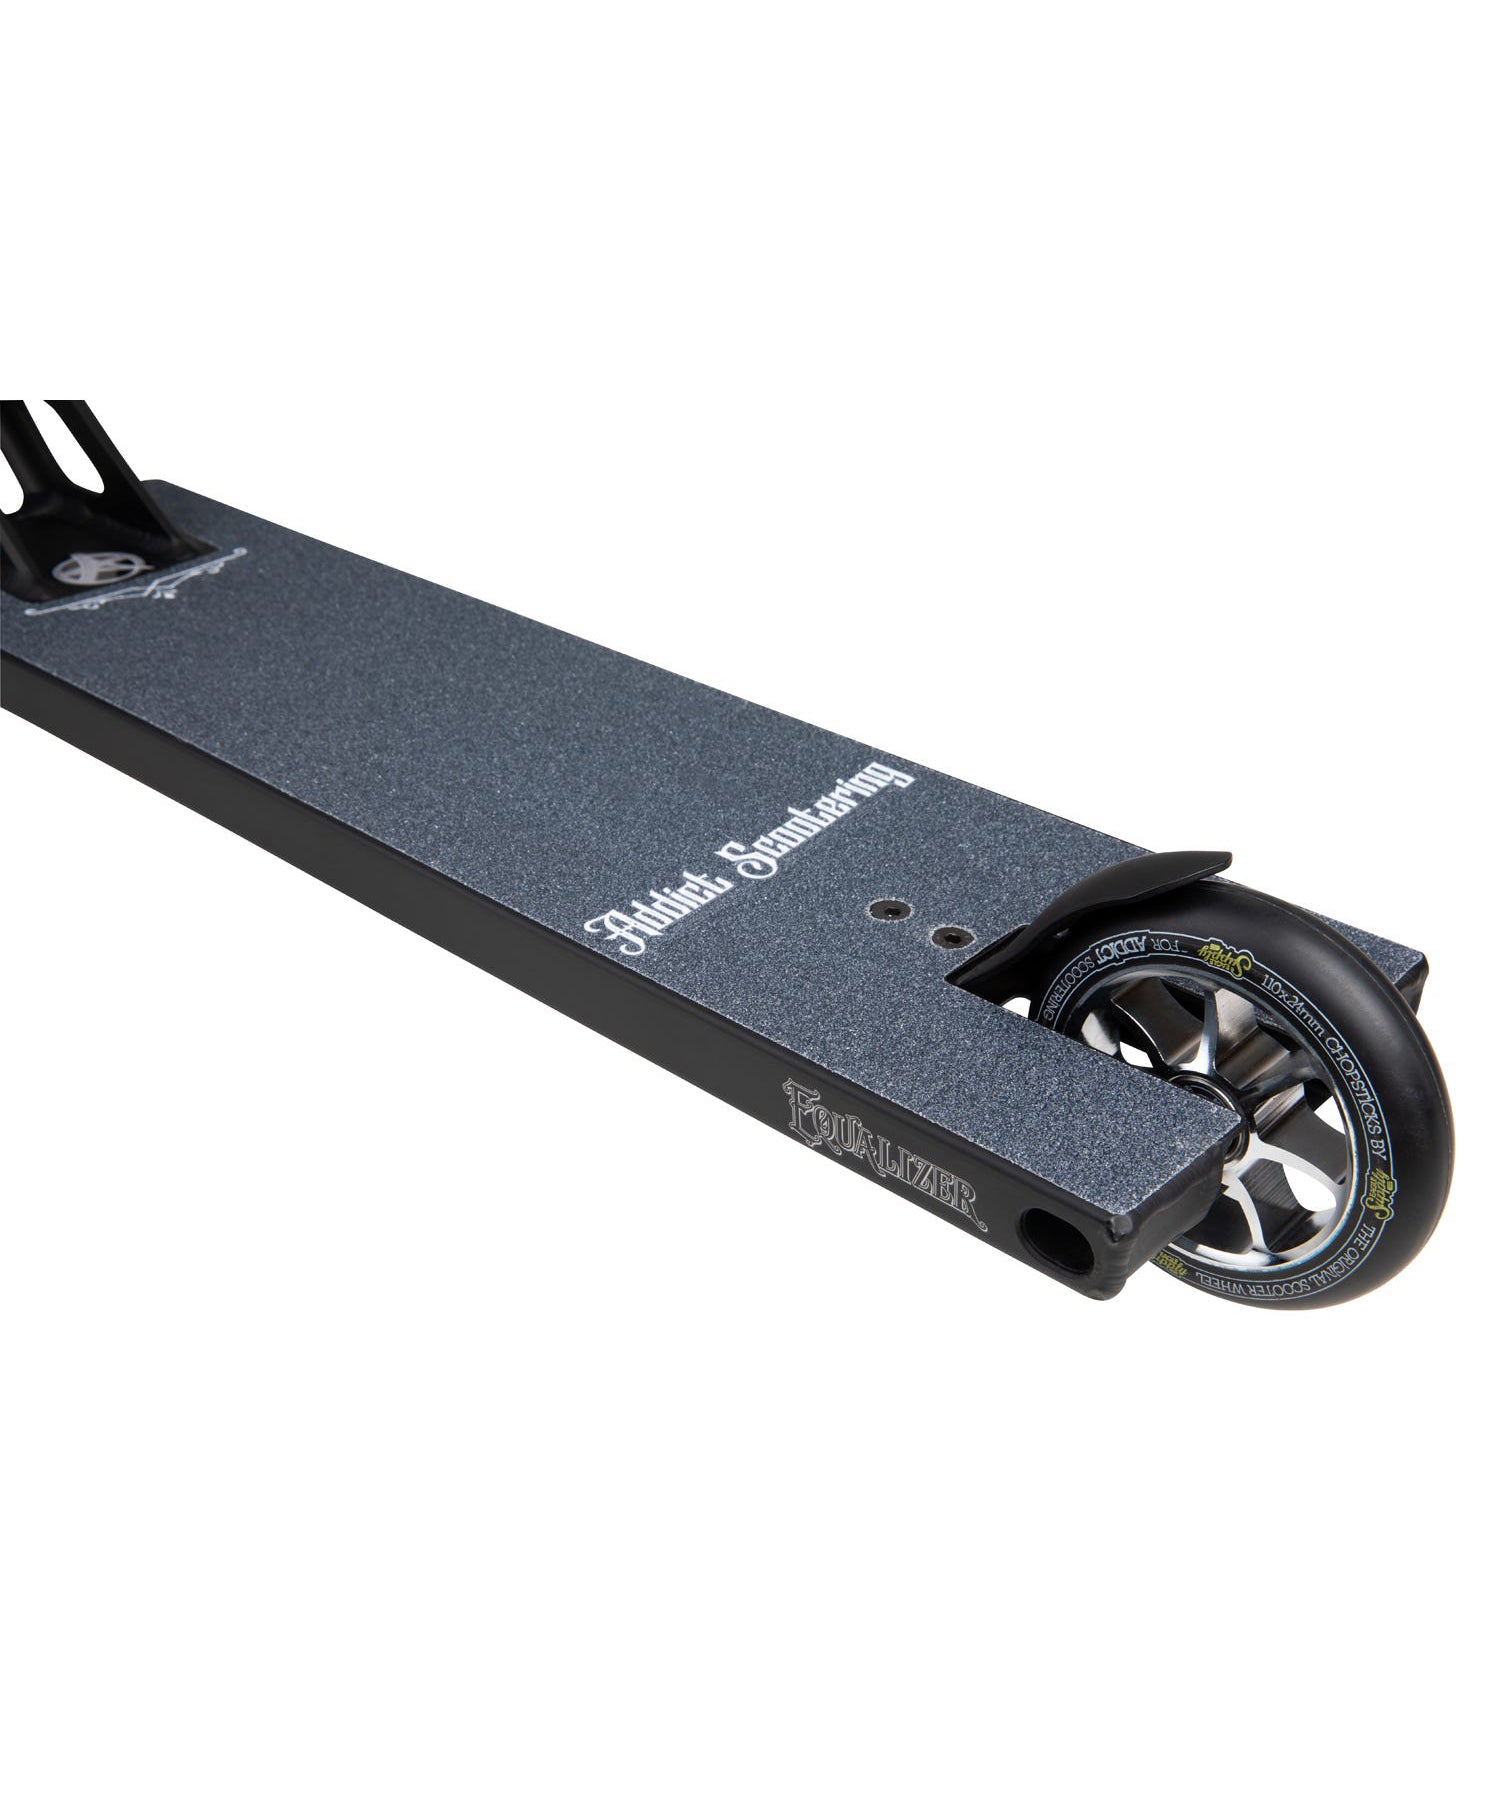 addict-scooter-completo-equalizer-20-color-negro-cromo-profesional-materiales de primera calidad-rígido y robusto.